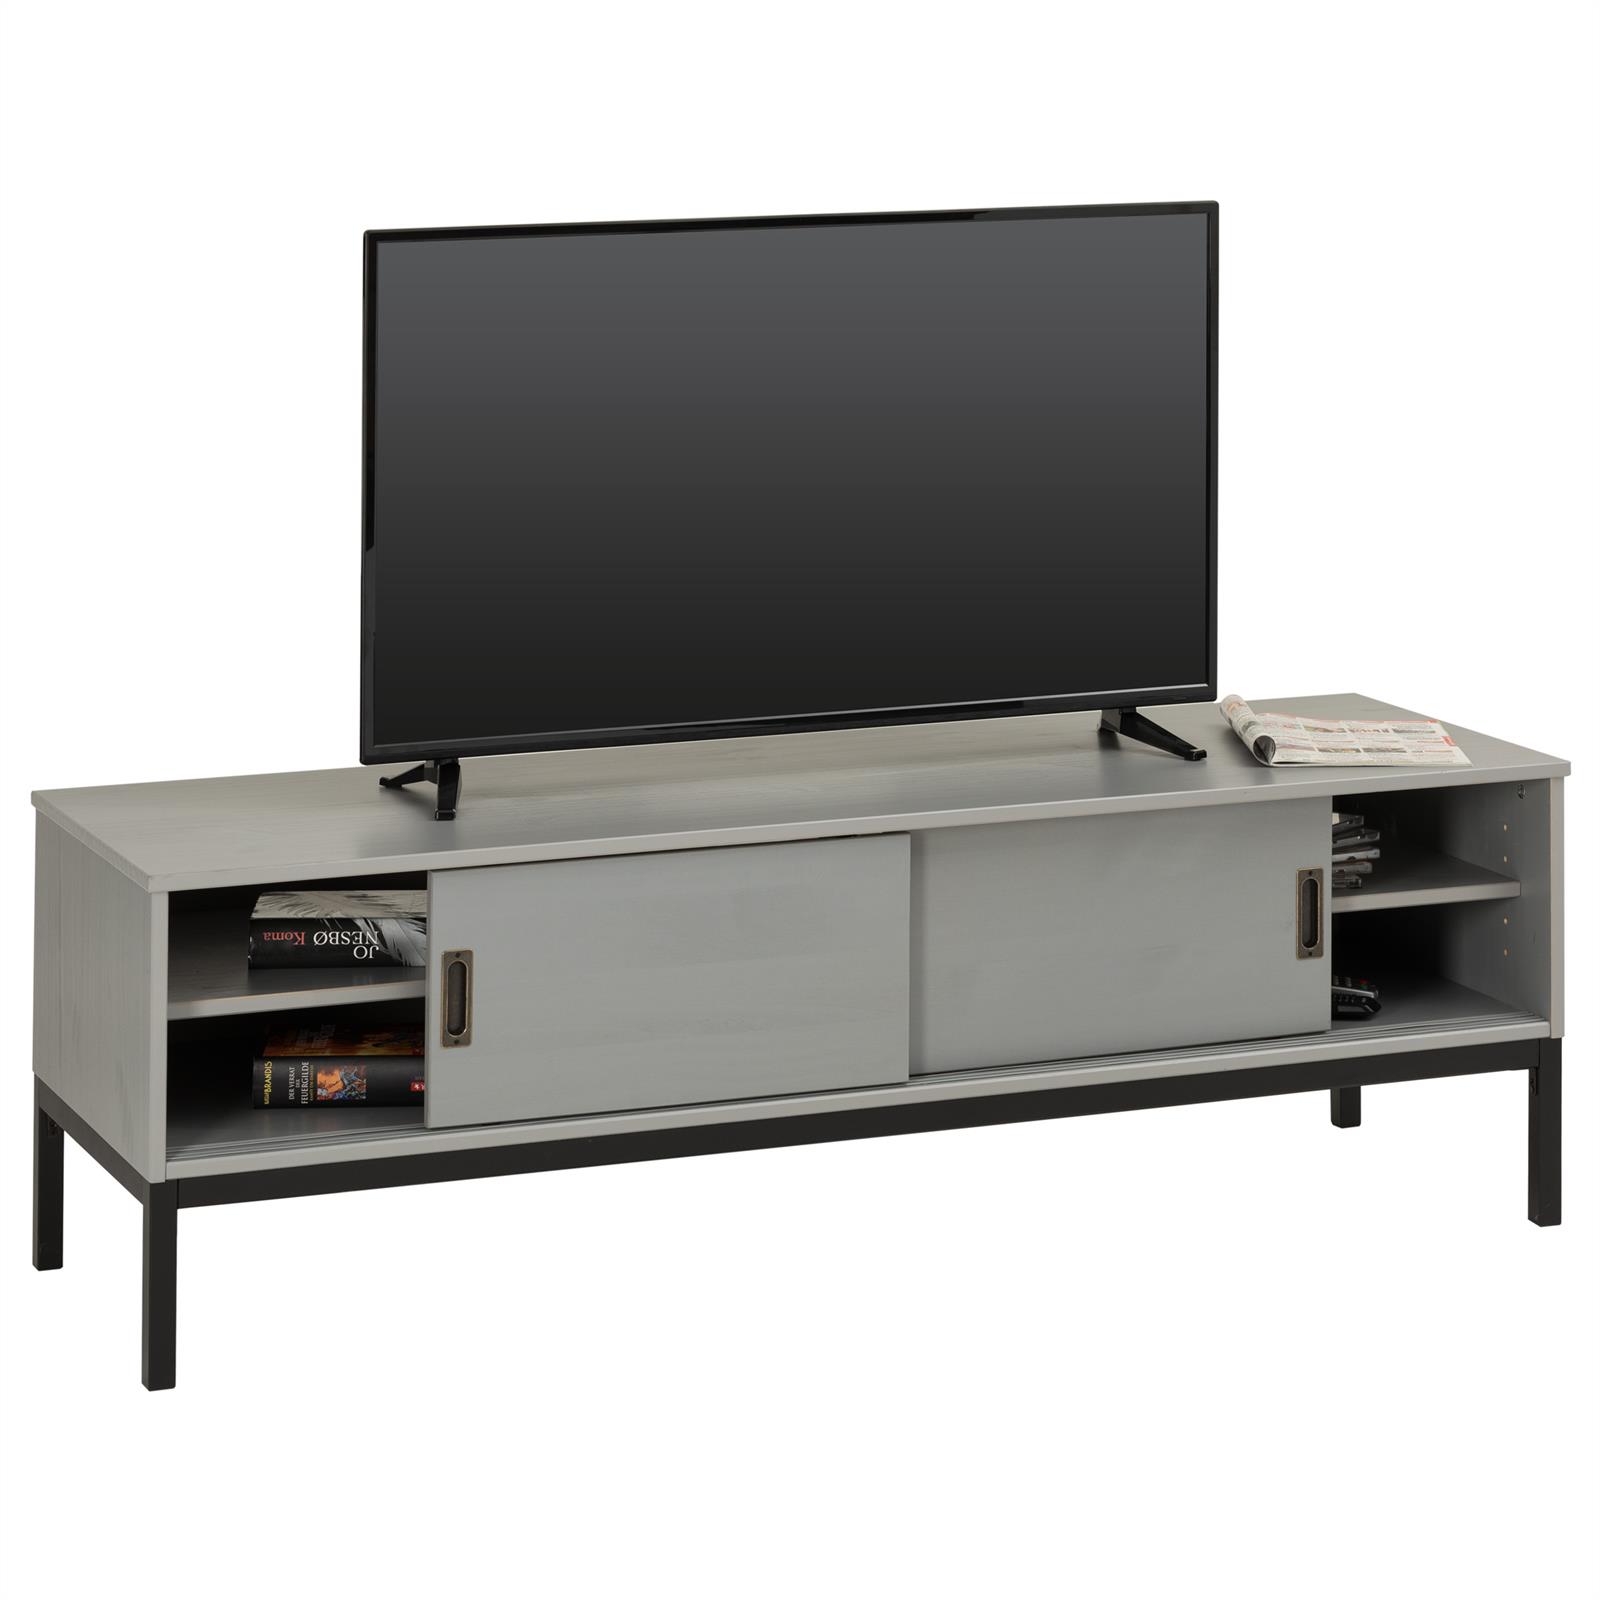 Details Zu Lowboard Tv Mobel Tisch Schrank Fernsehtisch Fernsehschrank Industrial Design